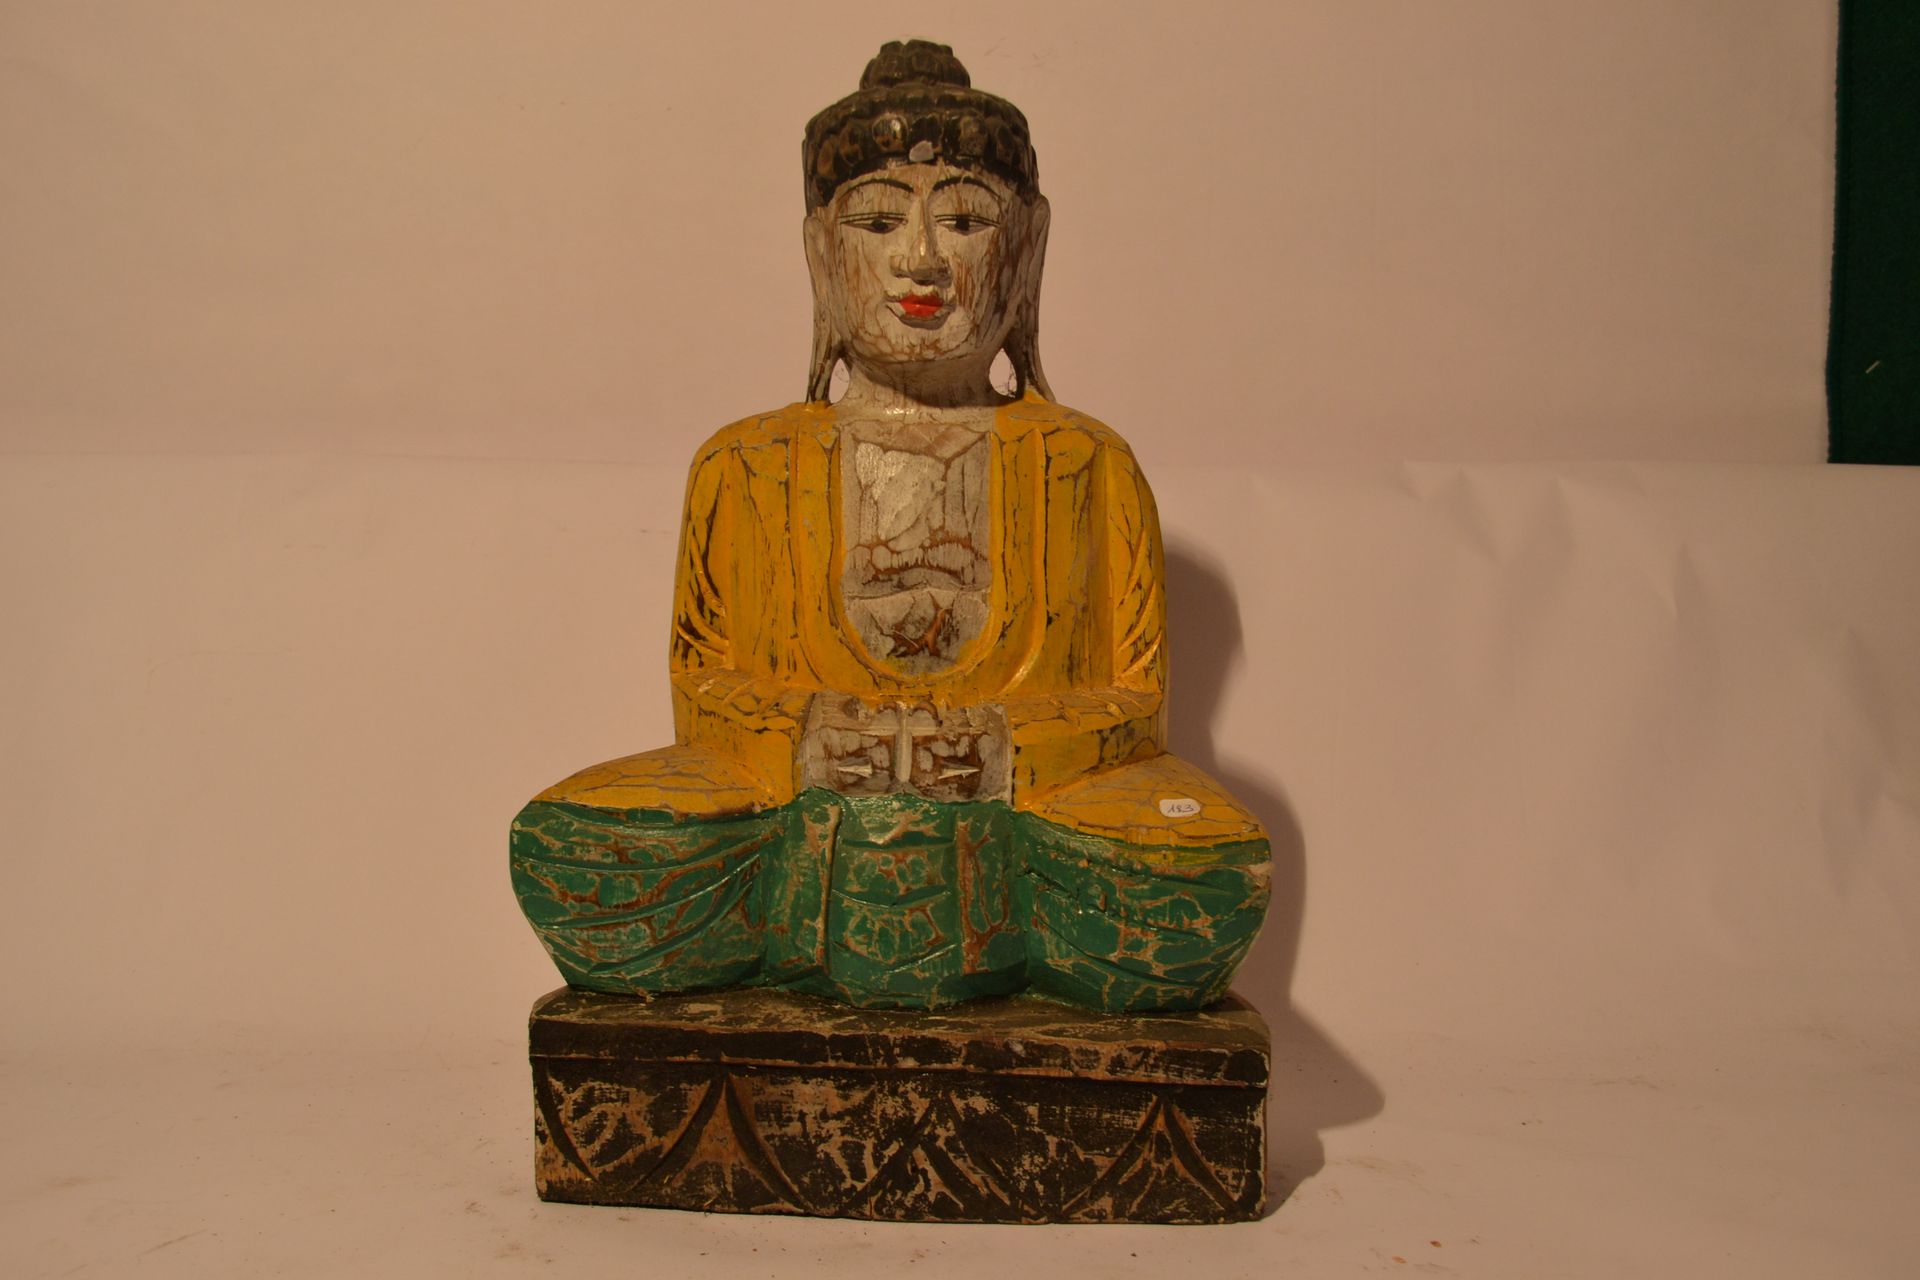 Null Buddha seduto, policromo 

Legno esotico

40 x 25 x 10 cm

peso: 1,5 Kg